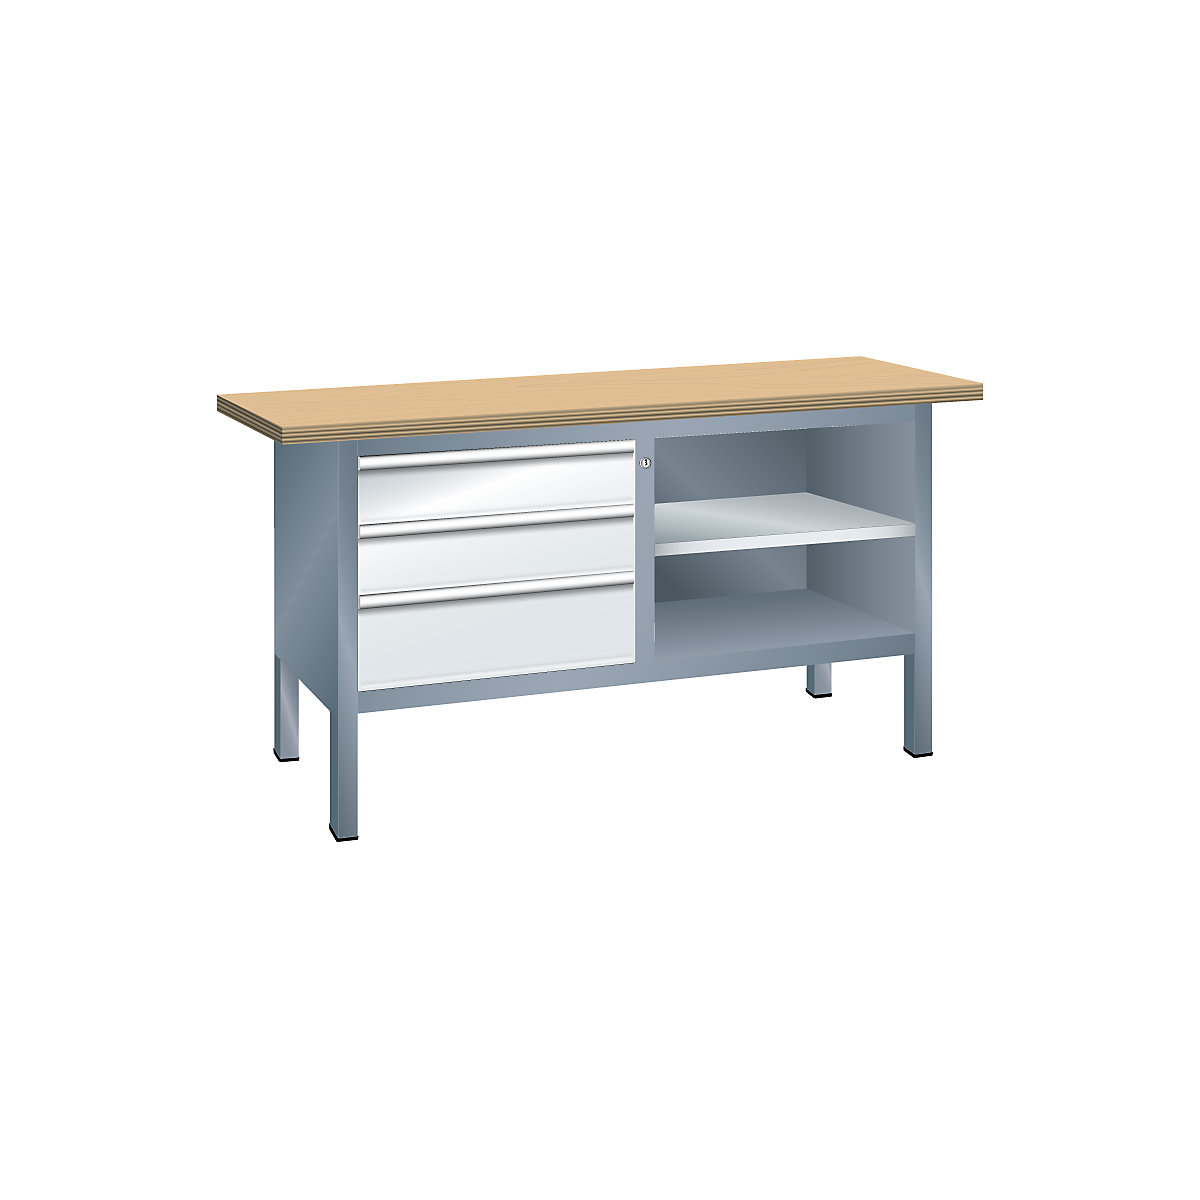 Stół warsztatowy, konstrukcja ramowa – LISTA, 3 szuflady, 2 półki, korpus szary metallic, front jasnoszary-10